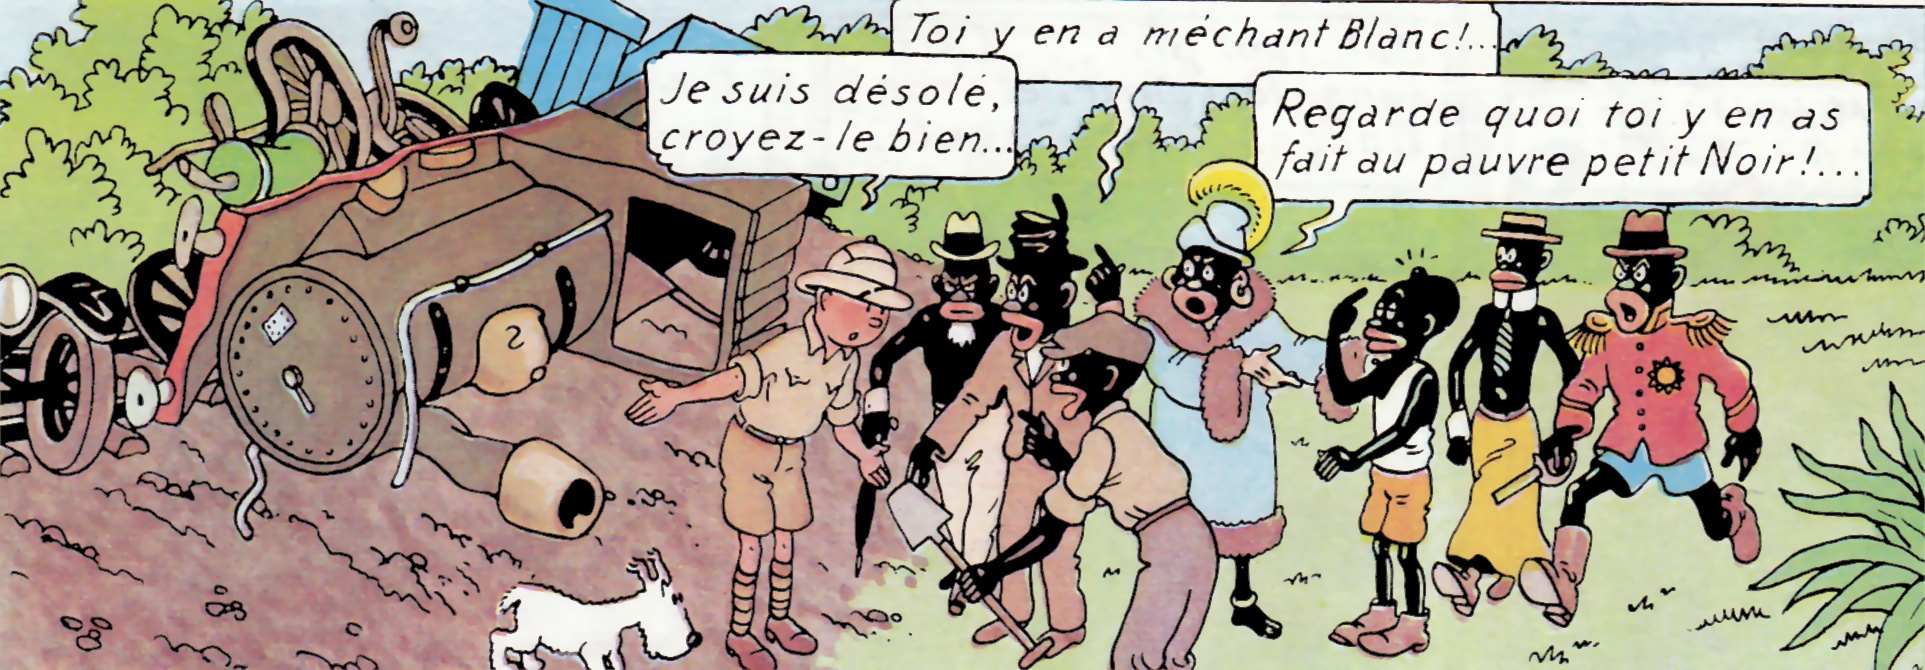 Les aventures de « Tintin au Congo », un ouvrage sujet à polémiques